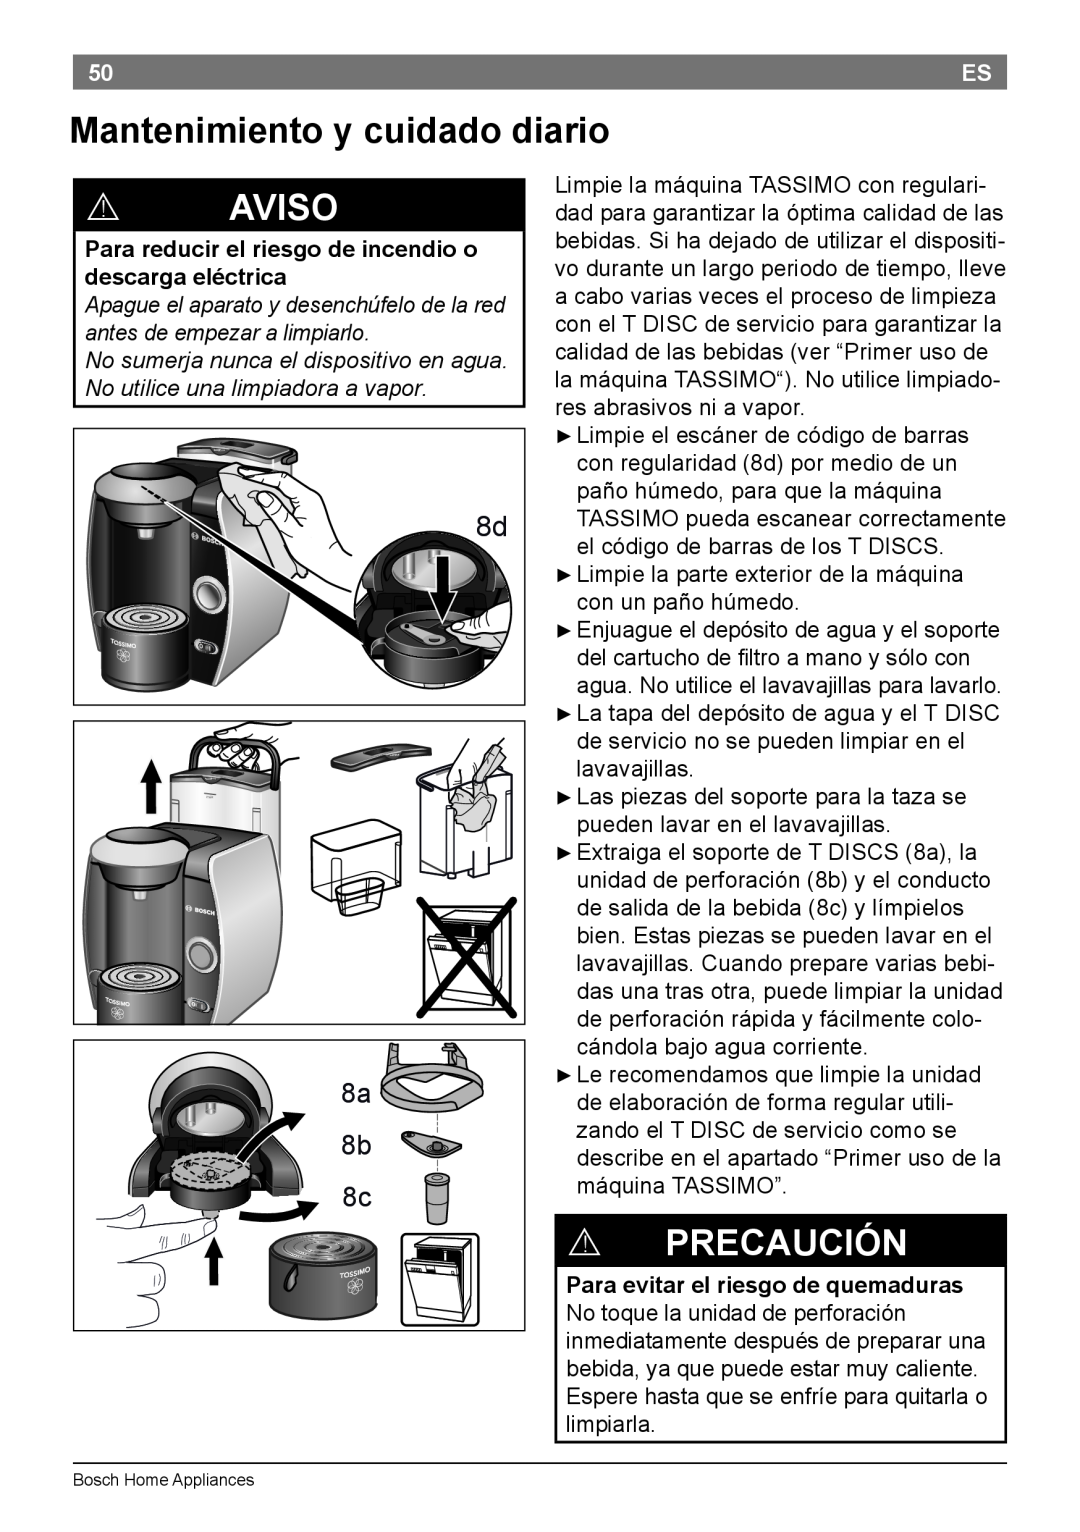 Bosch Appliances T45 instruction manual Mantenimiento y cuidado diario, ! Precaución, ! Aviso 